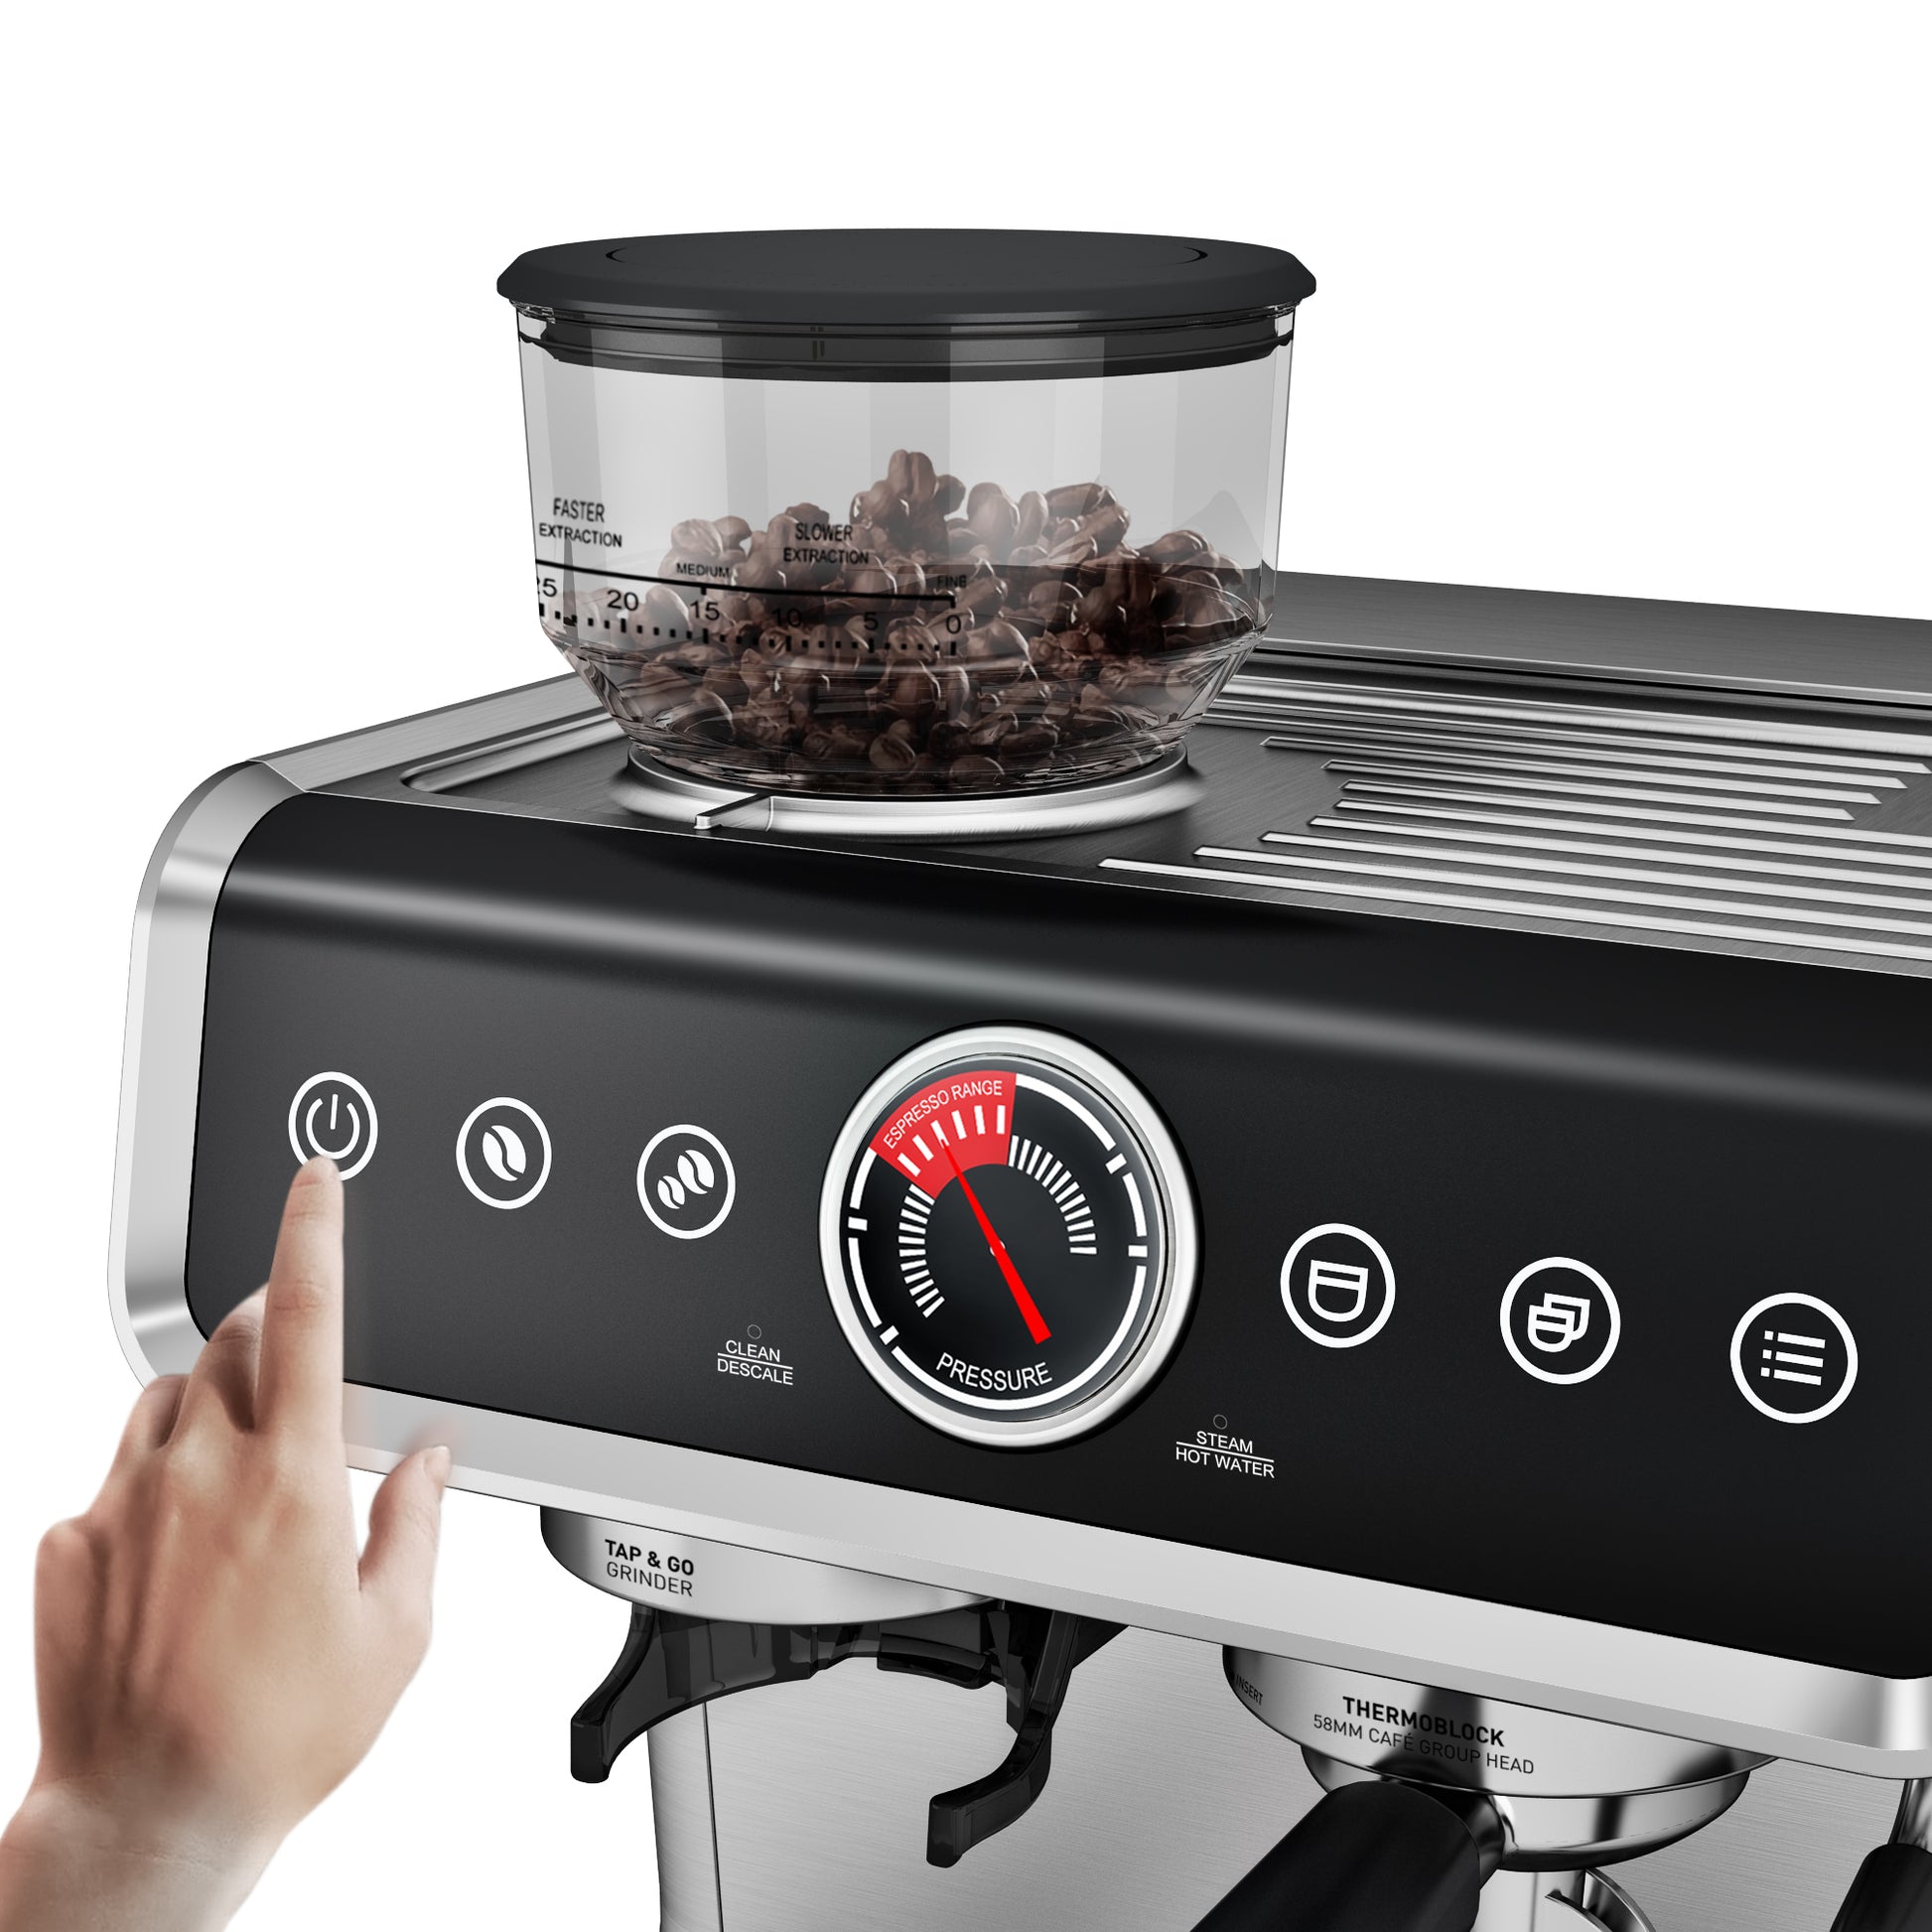 <img src="espresso machine.jpg" alt="wirsh espresso machine pannel"/>